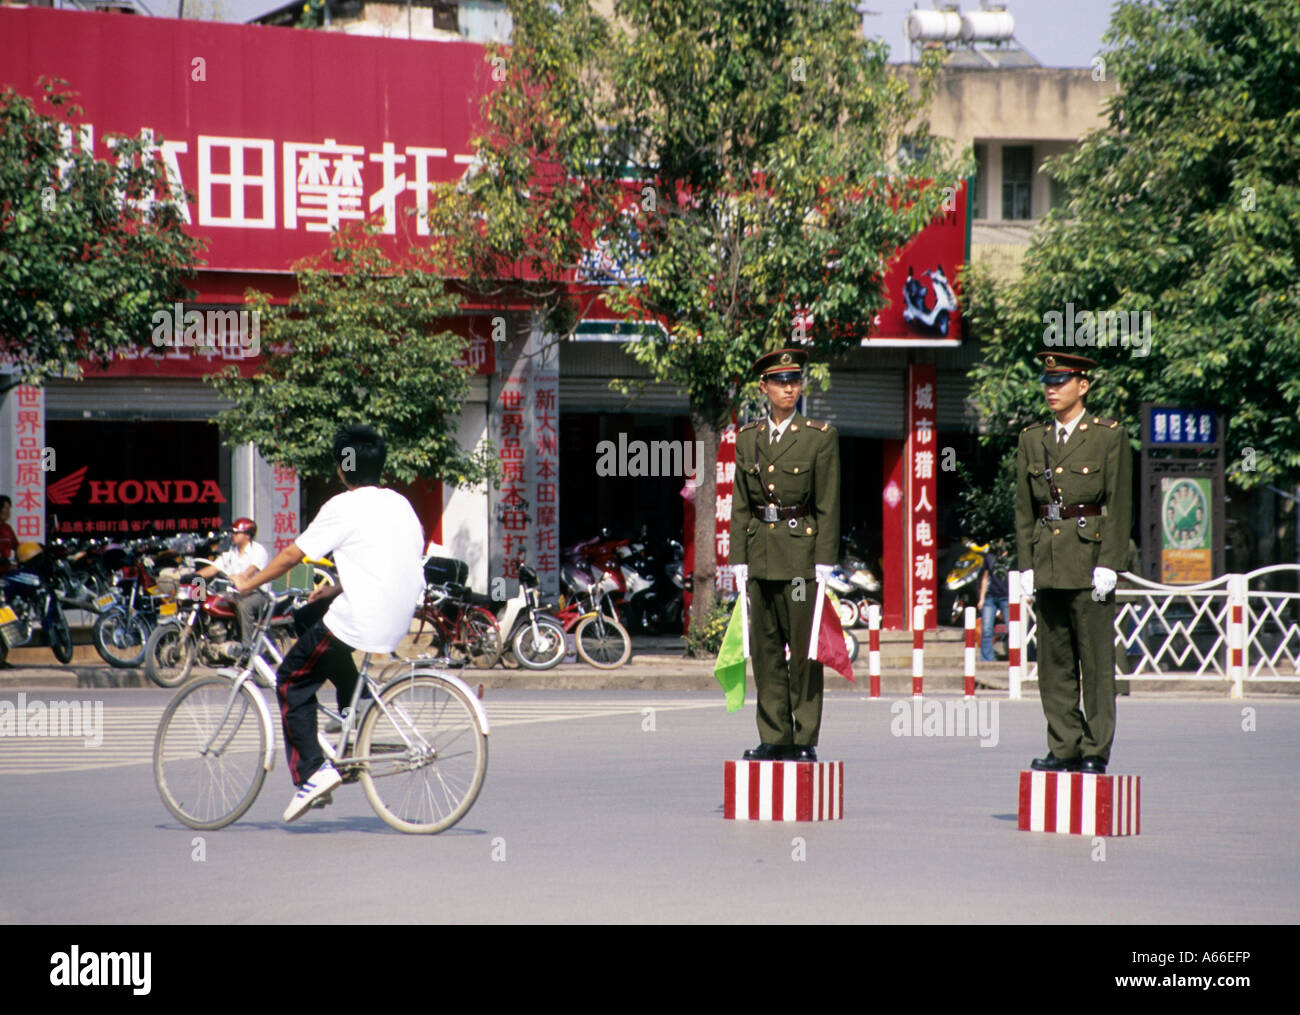 Dos policías de pie en postura tiesa en un cruce, esperando a altos dirigentes políticos que pasan por el lugar. Jianshui, China. Foto de stock